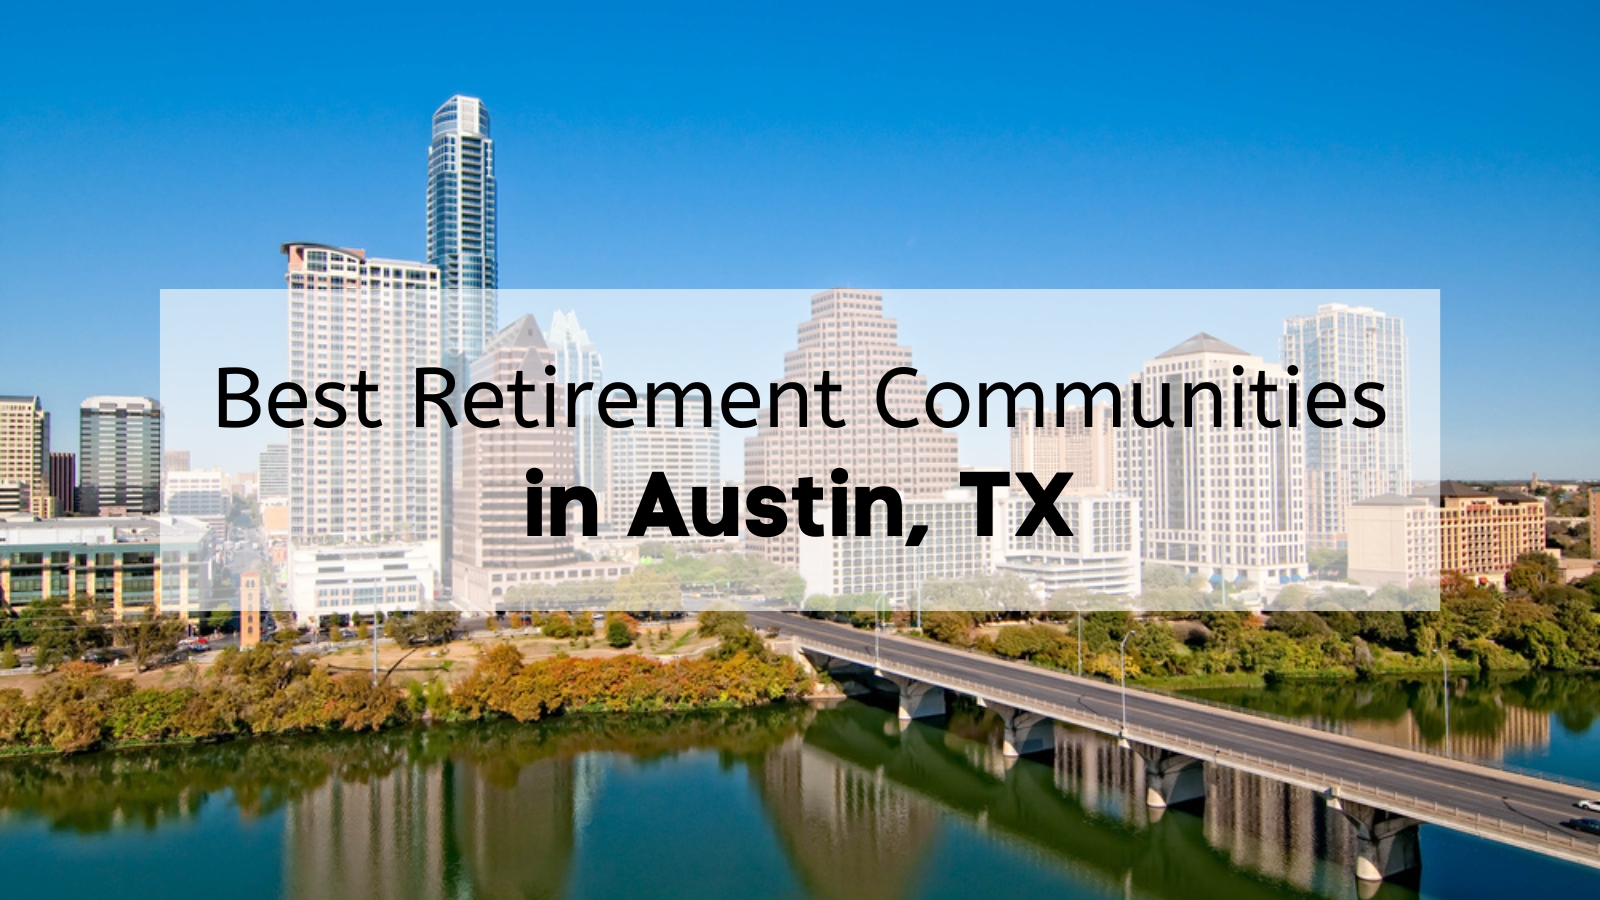 Austin Texas Retirement Communities ⛳, 7 Gorgeous Retirement Communities  in Austin TX You'll Love - Unicorn Moving Austin Texas Retirement  Communities ⛳